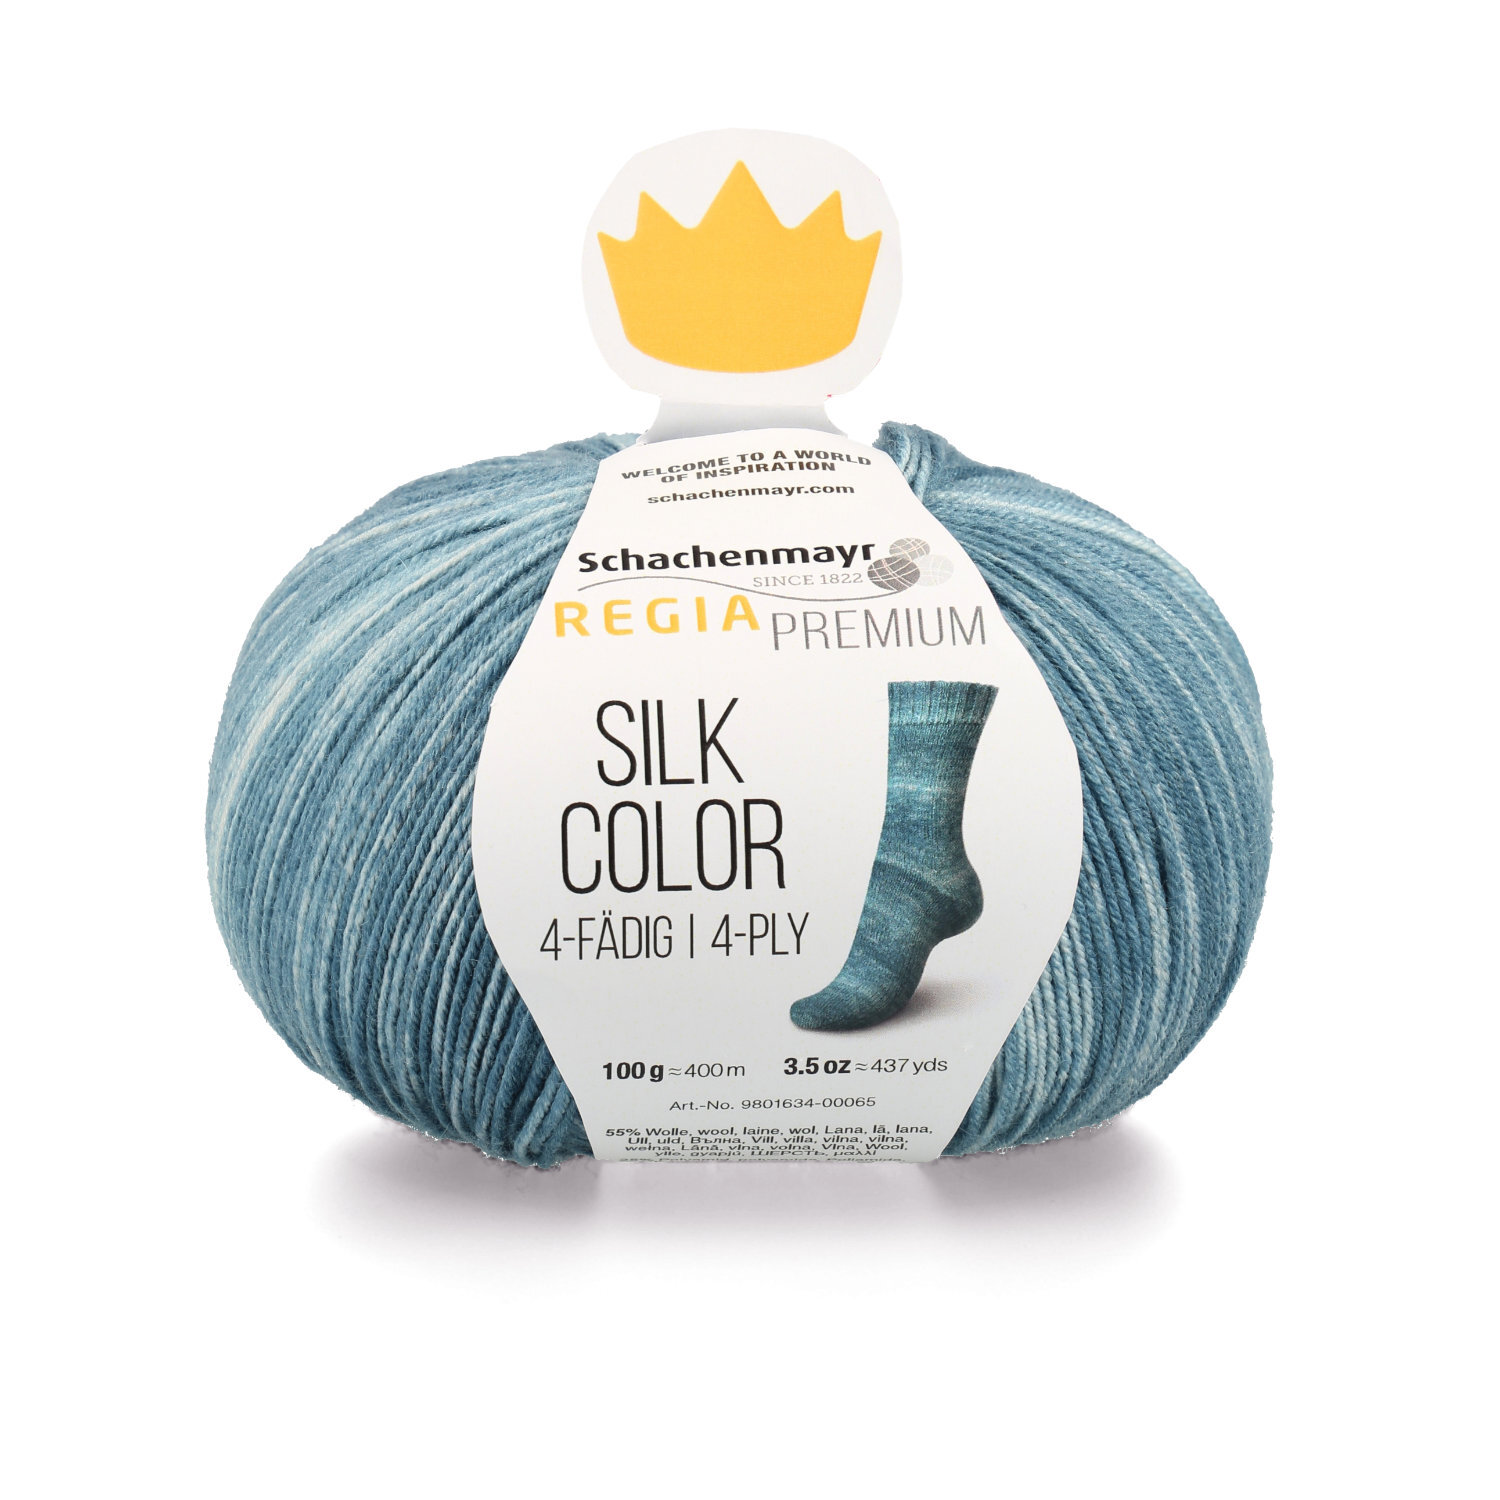 REGIA Premium Silk Color 4fädig